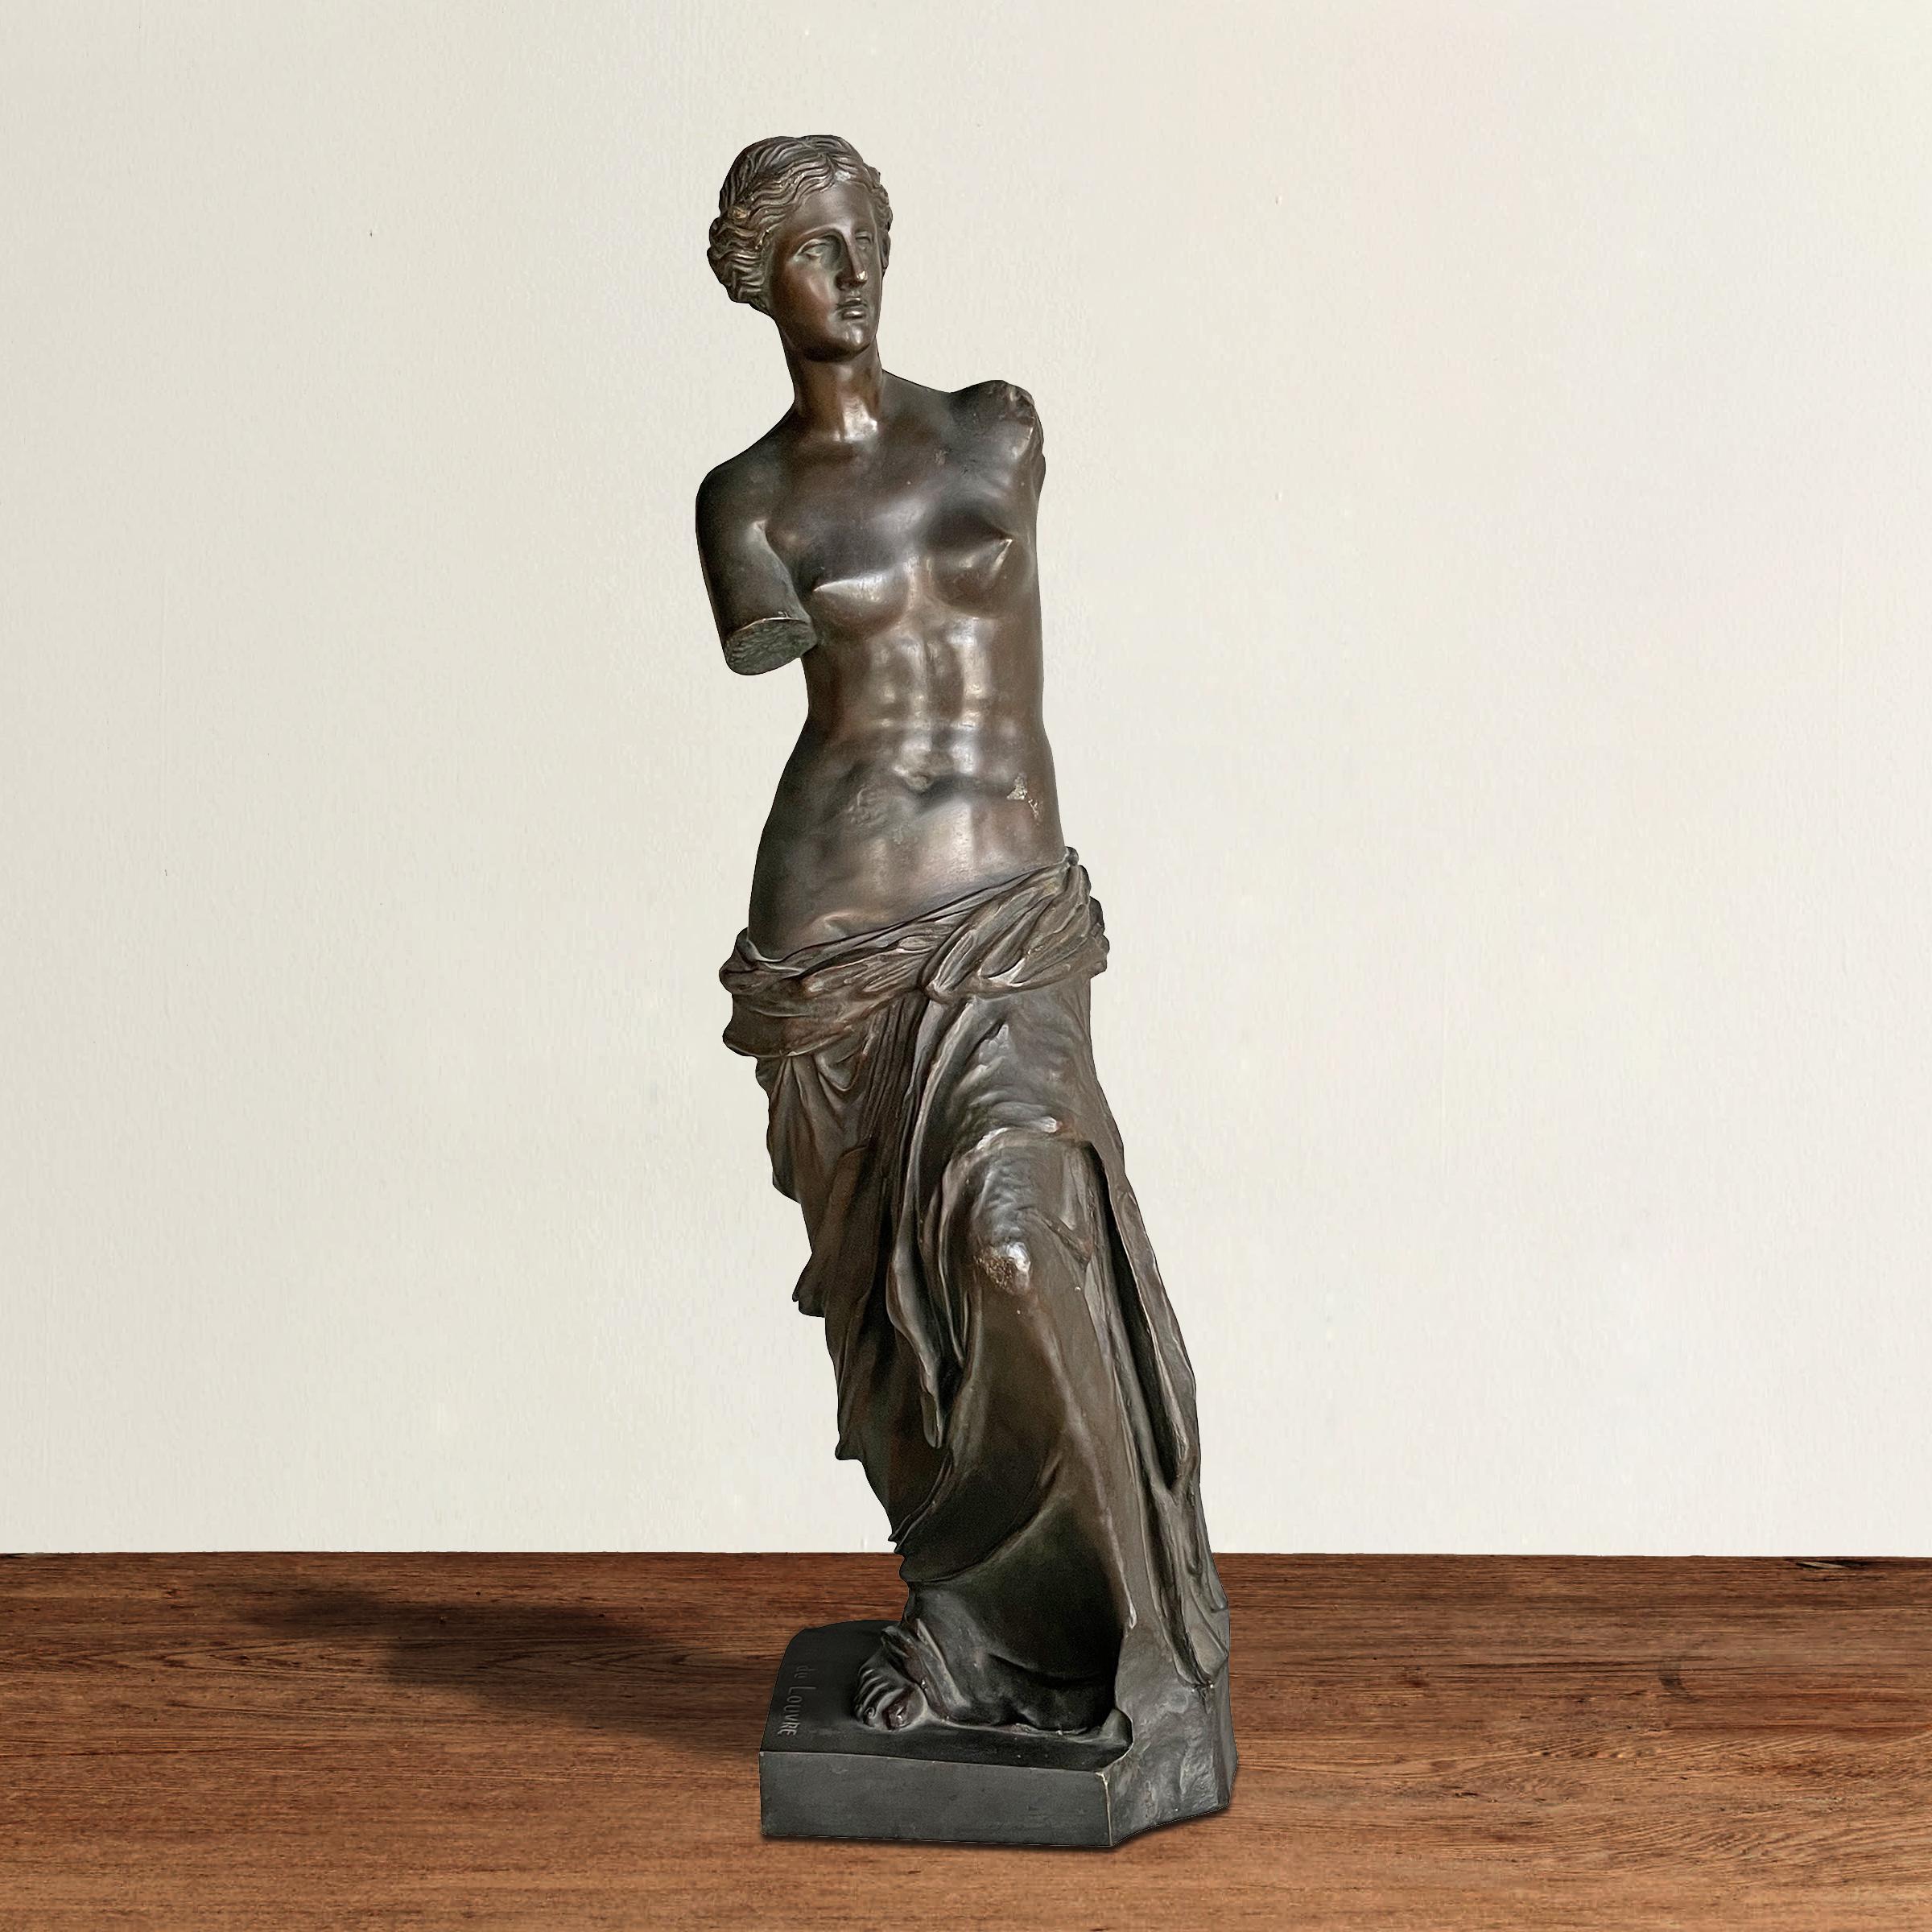 Remarquable et séduisante sculpture en bronze coulé Grand Tour du XIXe siècle représentant la déesse grecque ancienne Aphrodite, nommée d'après son homologue romaine, Vénus. L'original a été découvert en 1820 sur l'île de Milos, d'où le nom de Vénus